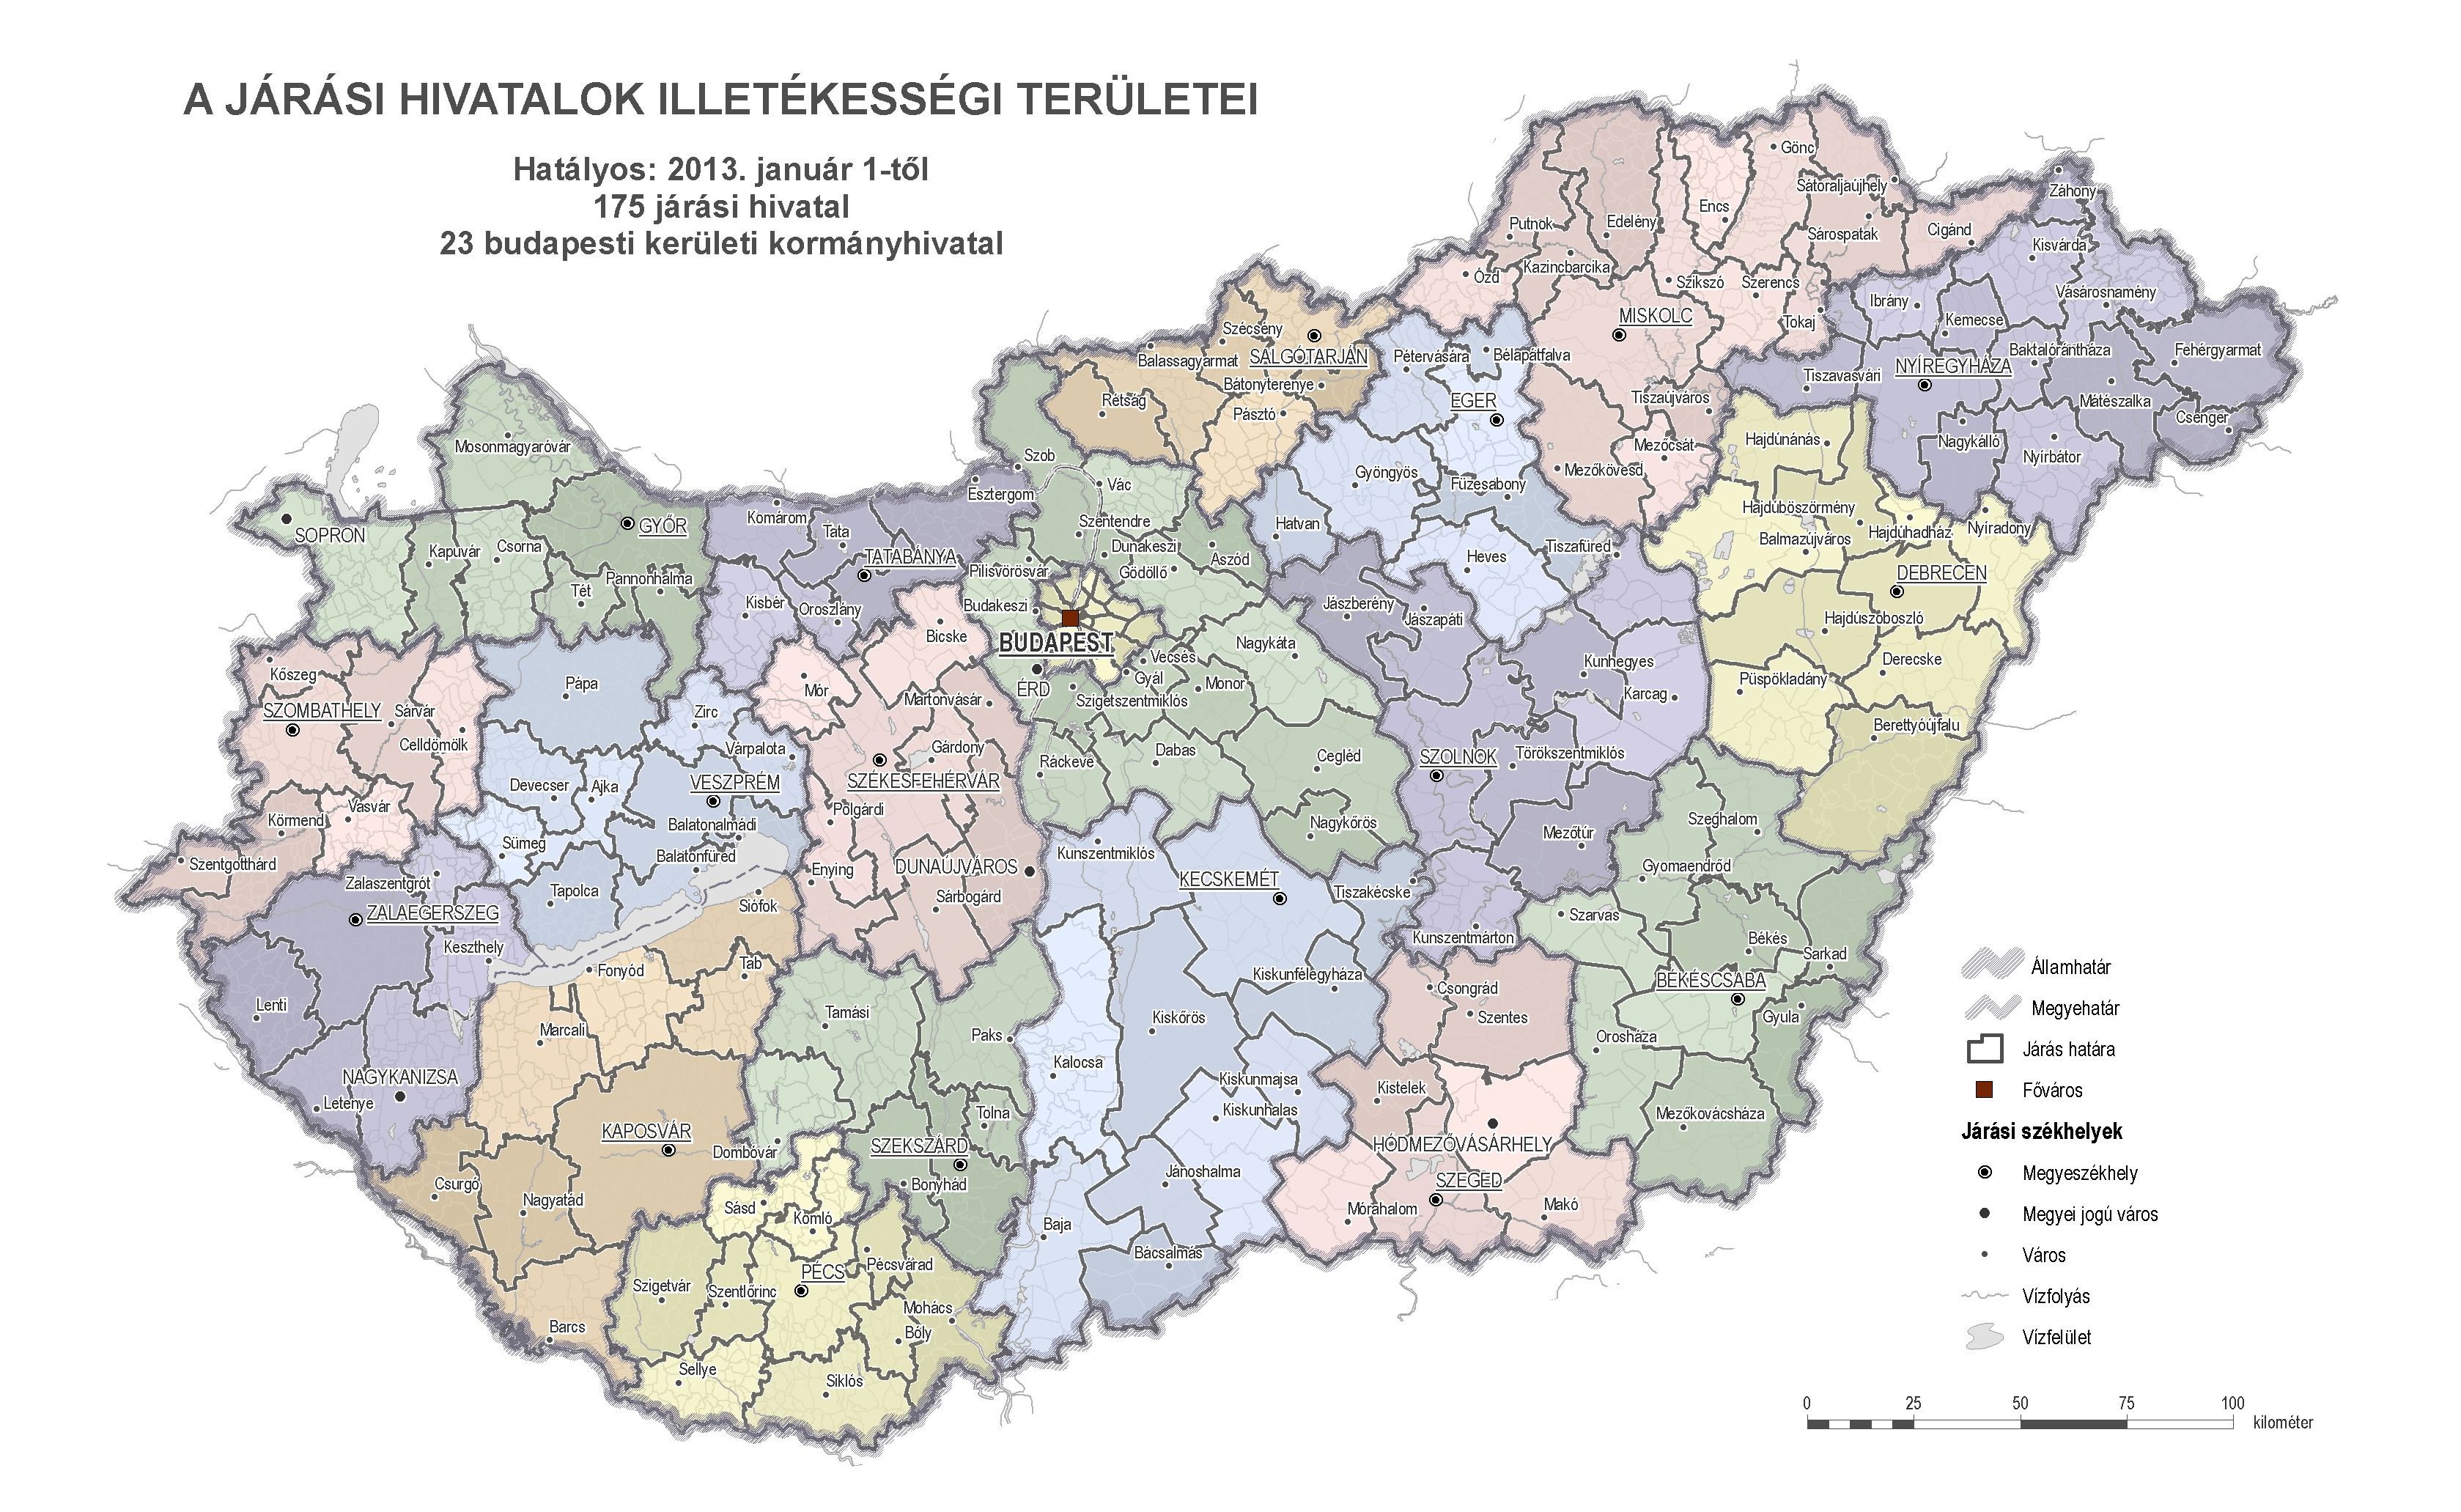 magyarország térkép székesfehérvár Mi valósult meg a építészetpolitikából? | 1.1. Járásonként  magyarország térkép székesfehérvár